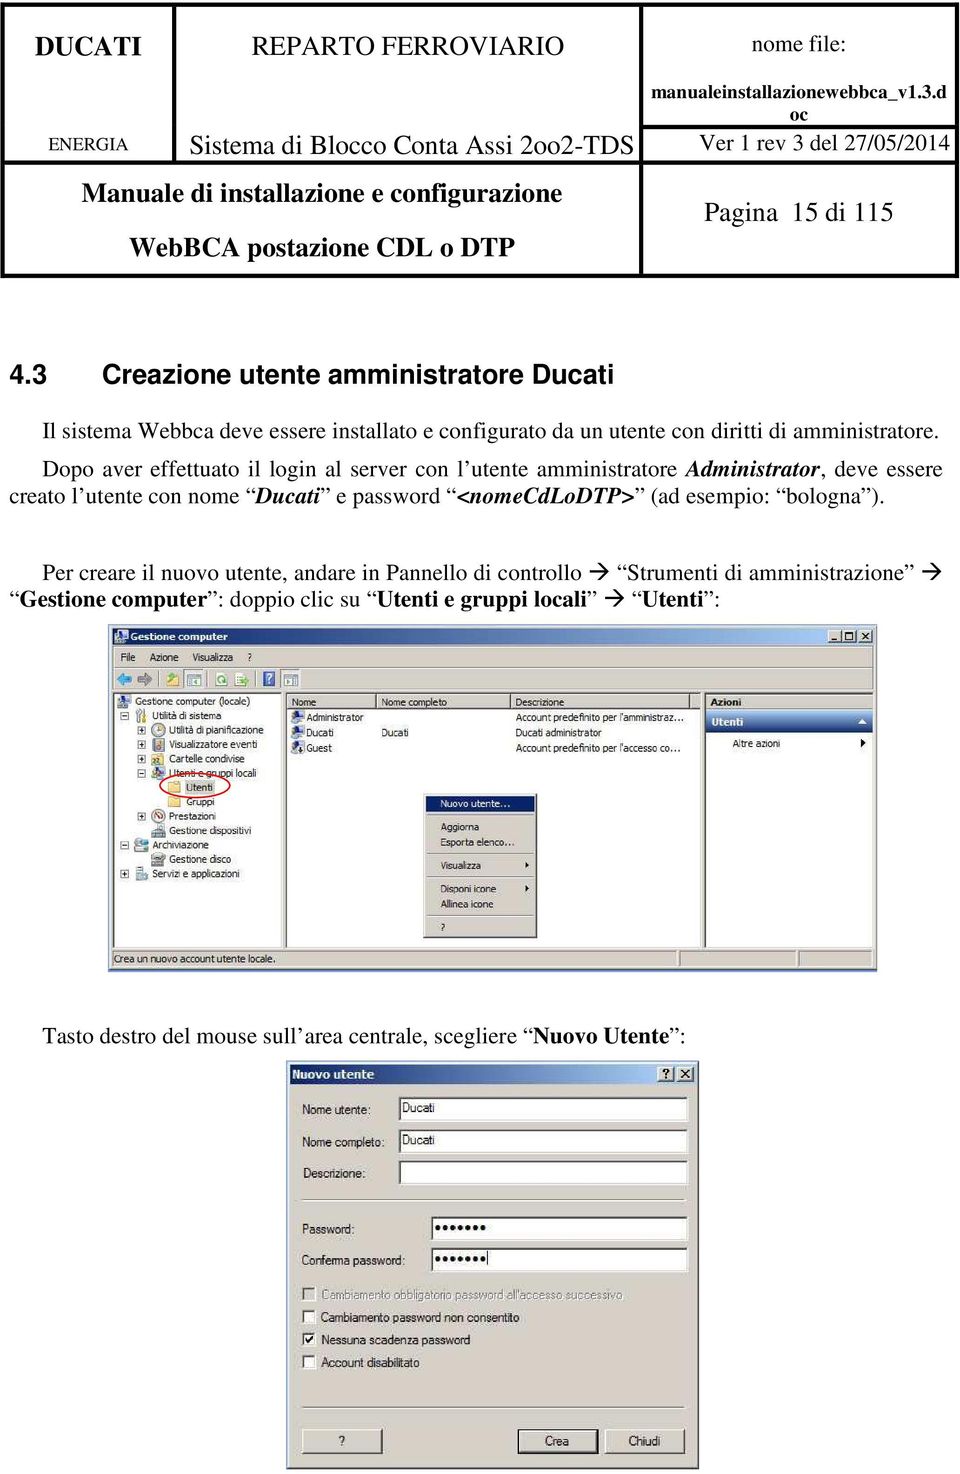 Dopo aver effettuato il login al server con l utente amministratore Administrator, deve essere creato l utente con nome Ducati e password